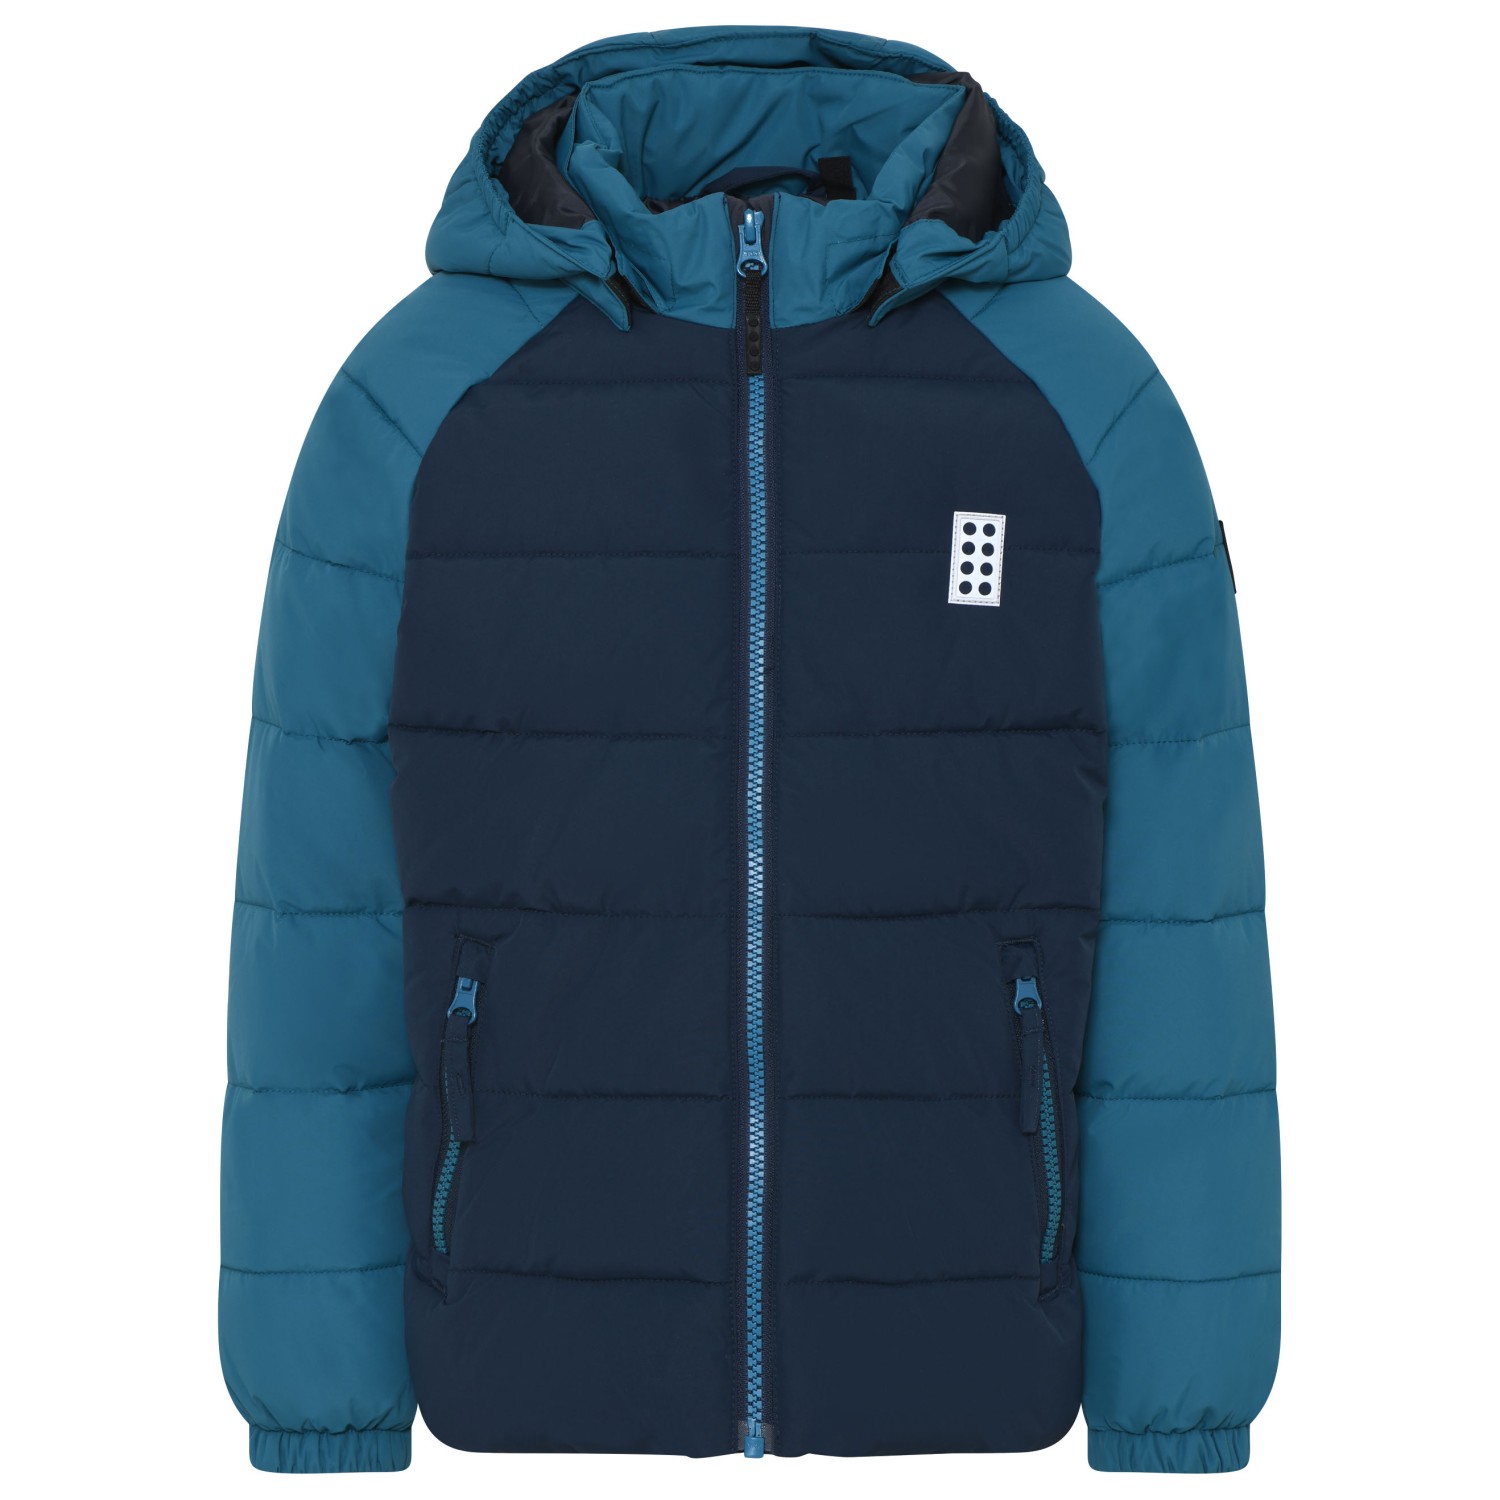 Зимняя куртка Lego Kid's Jipe 704, синий